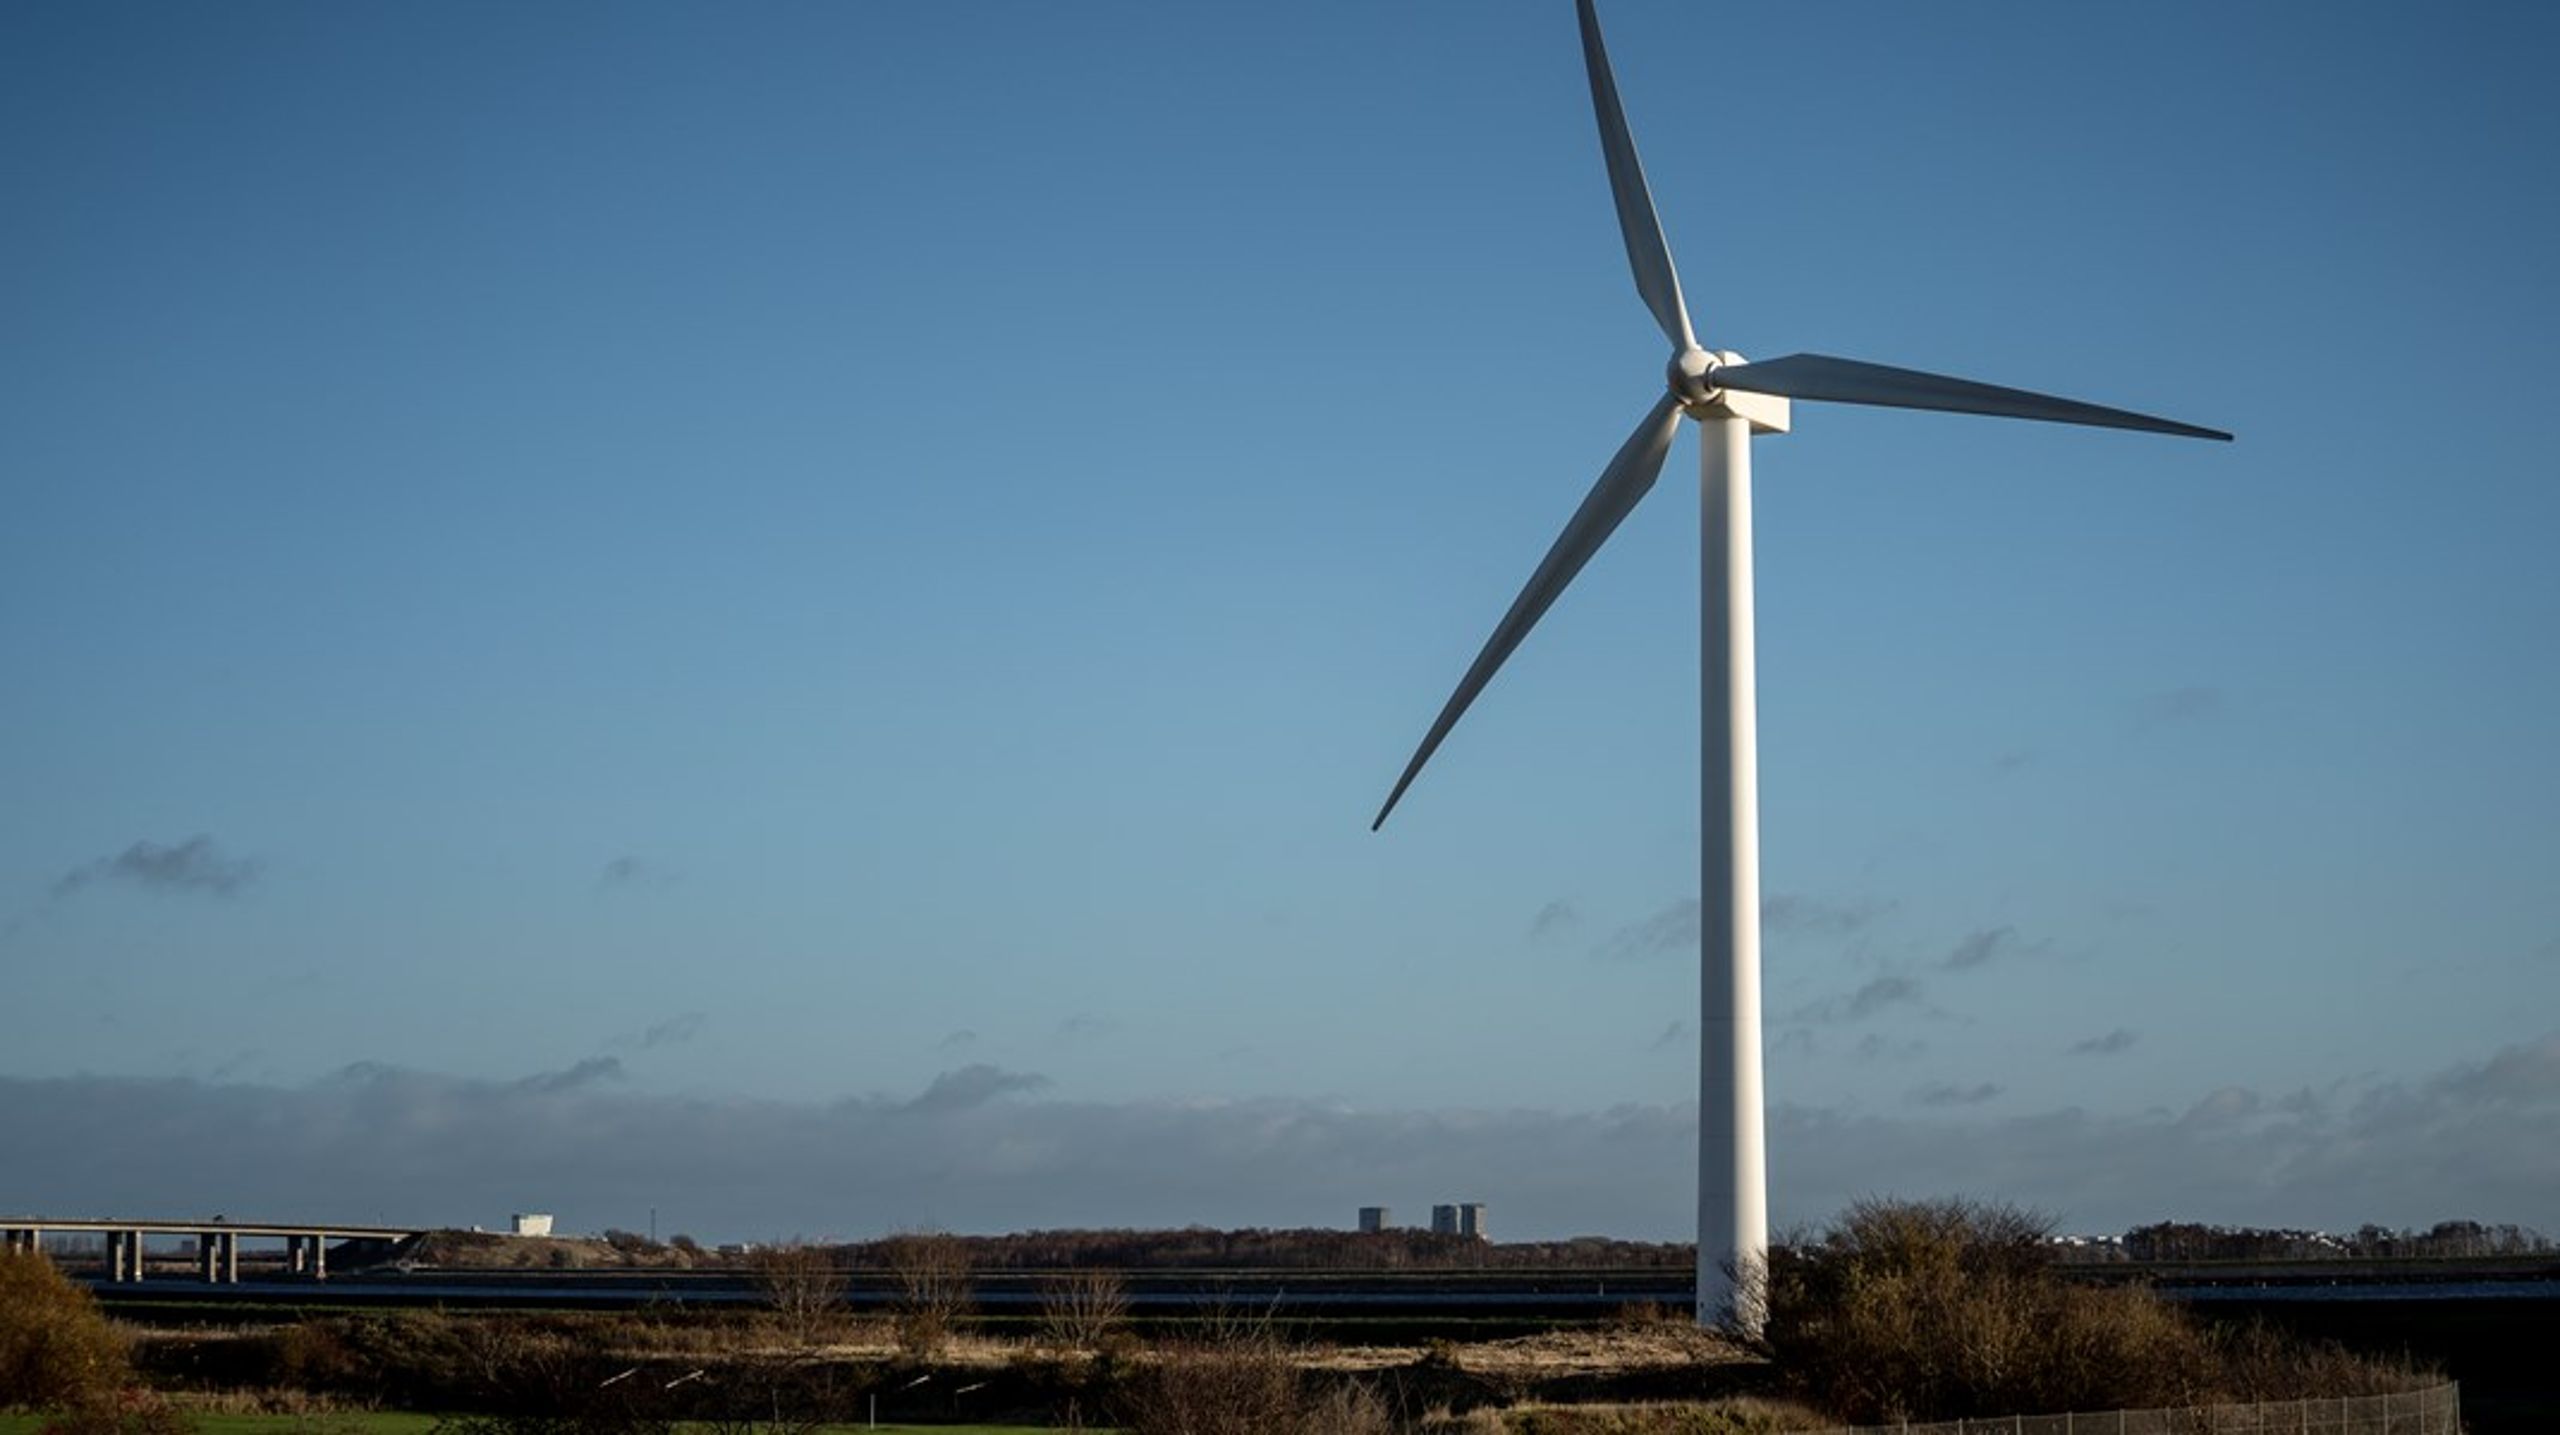 Demokratisk ejerskab kan vende borgermodstand mod klimatiltag som for eksempel flere vindmøller på land, skriver Magnus Skovrind Pedersen.